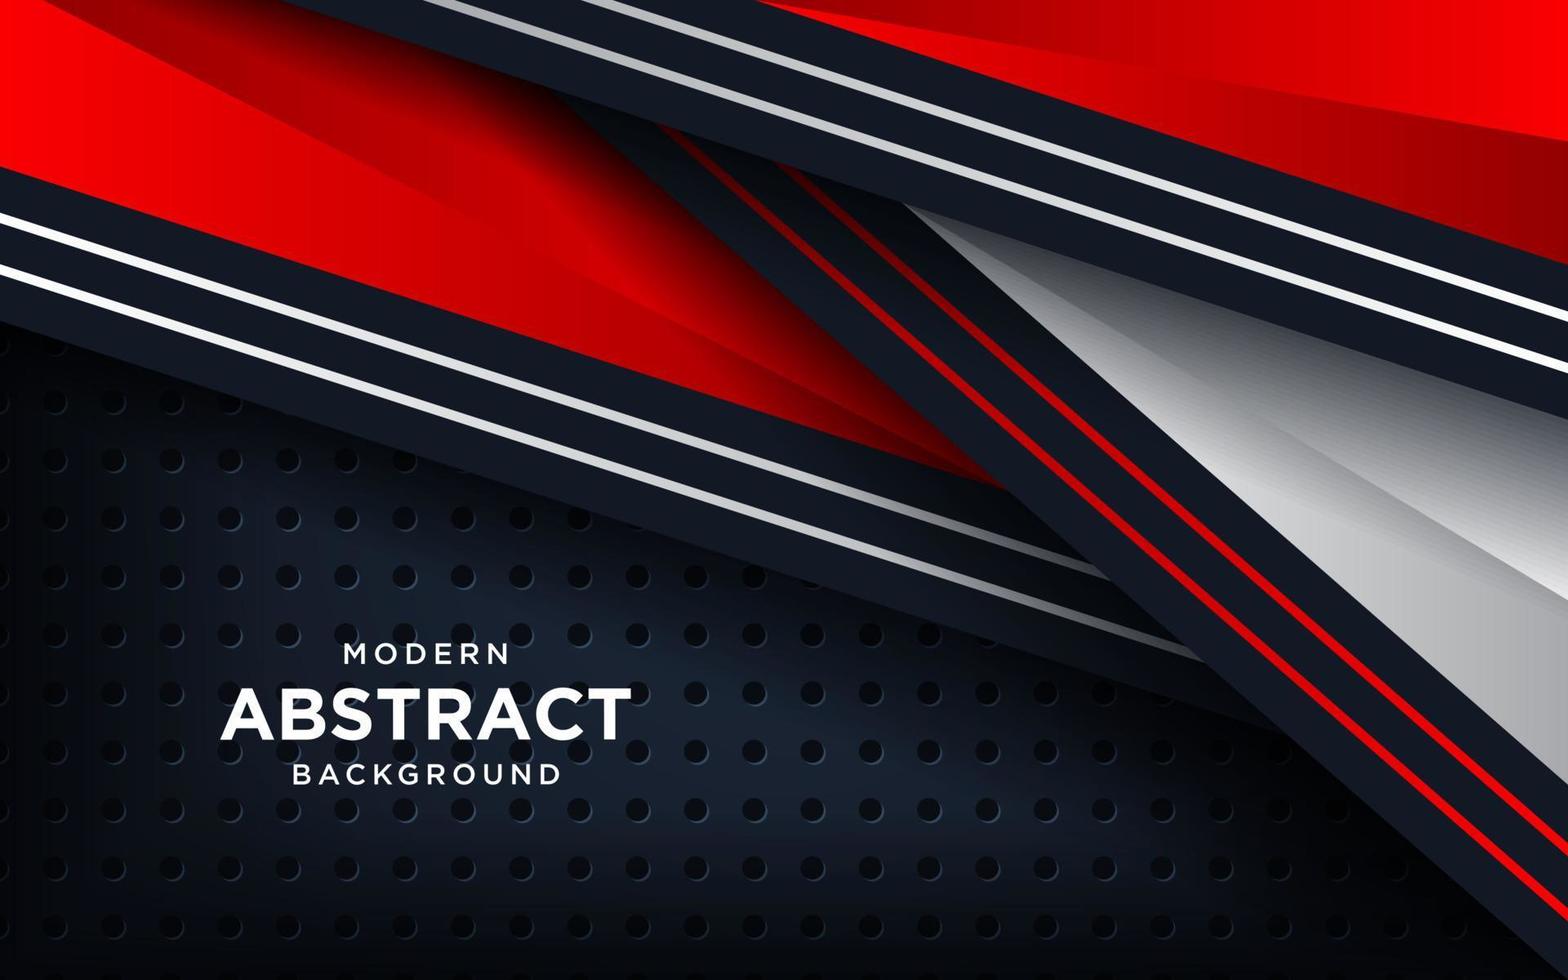 geometria 3d moderna molda preto com bordas vermelhas em fundo escuro. luxuoso vermelho brilhante com efeito metálico. vetor